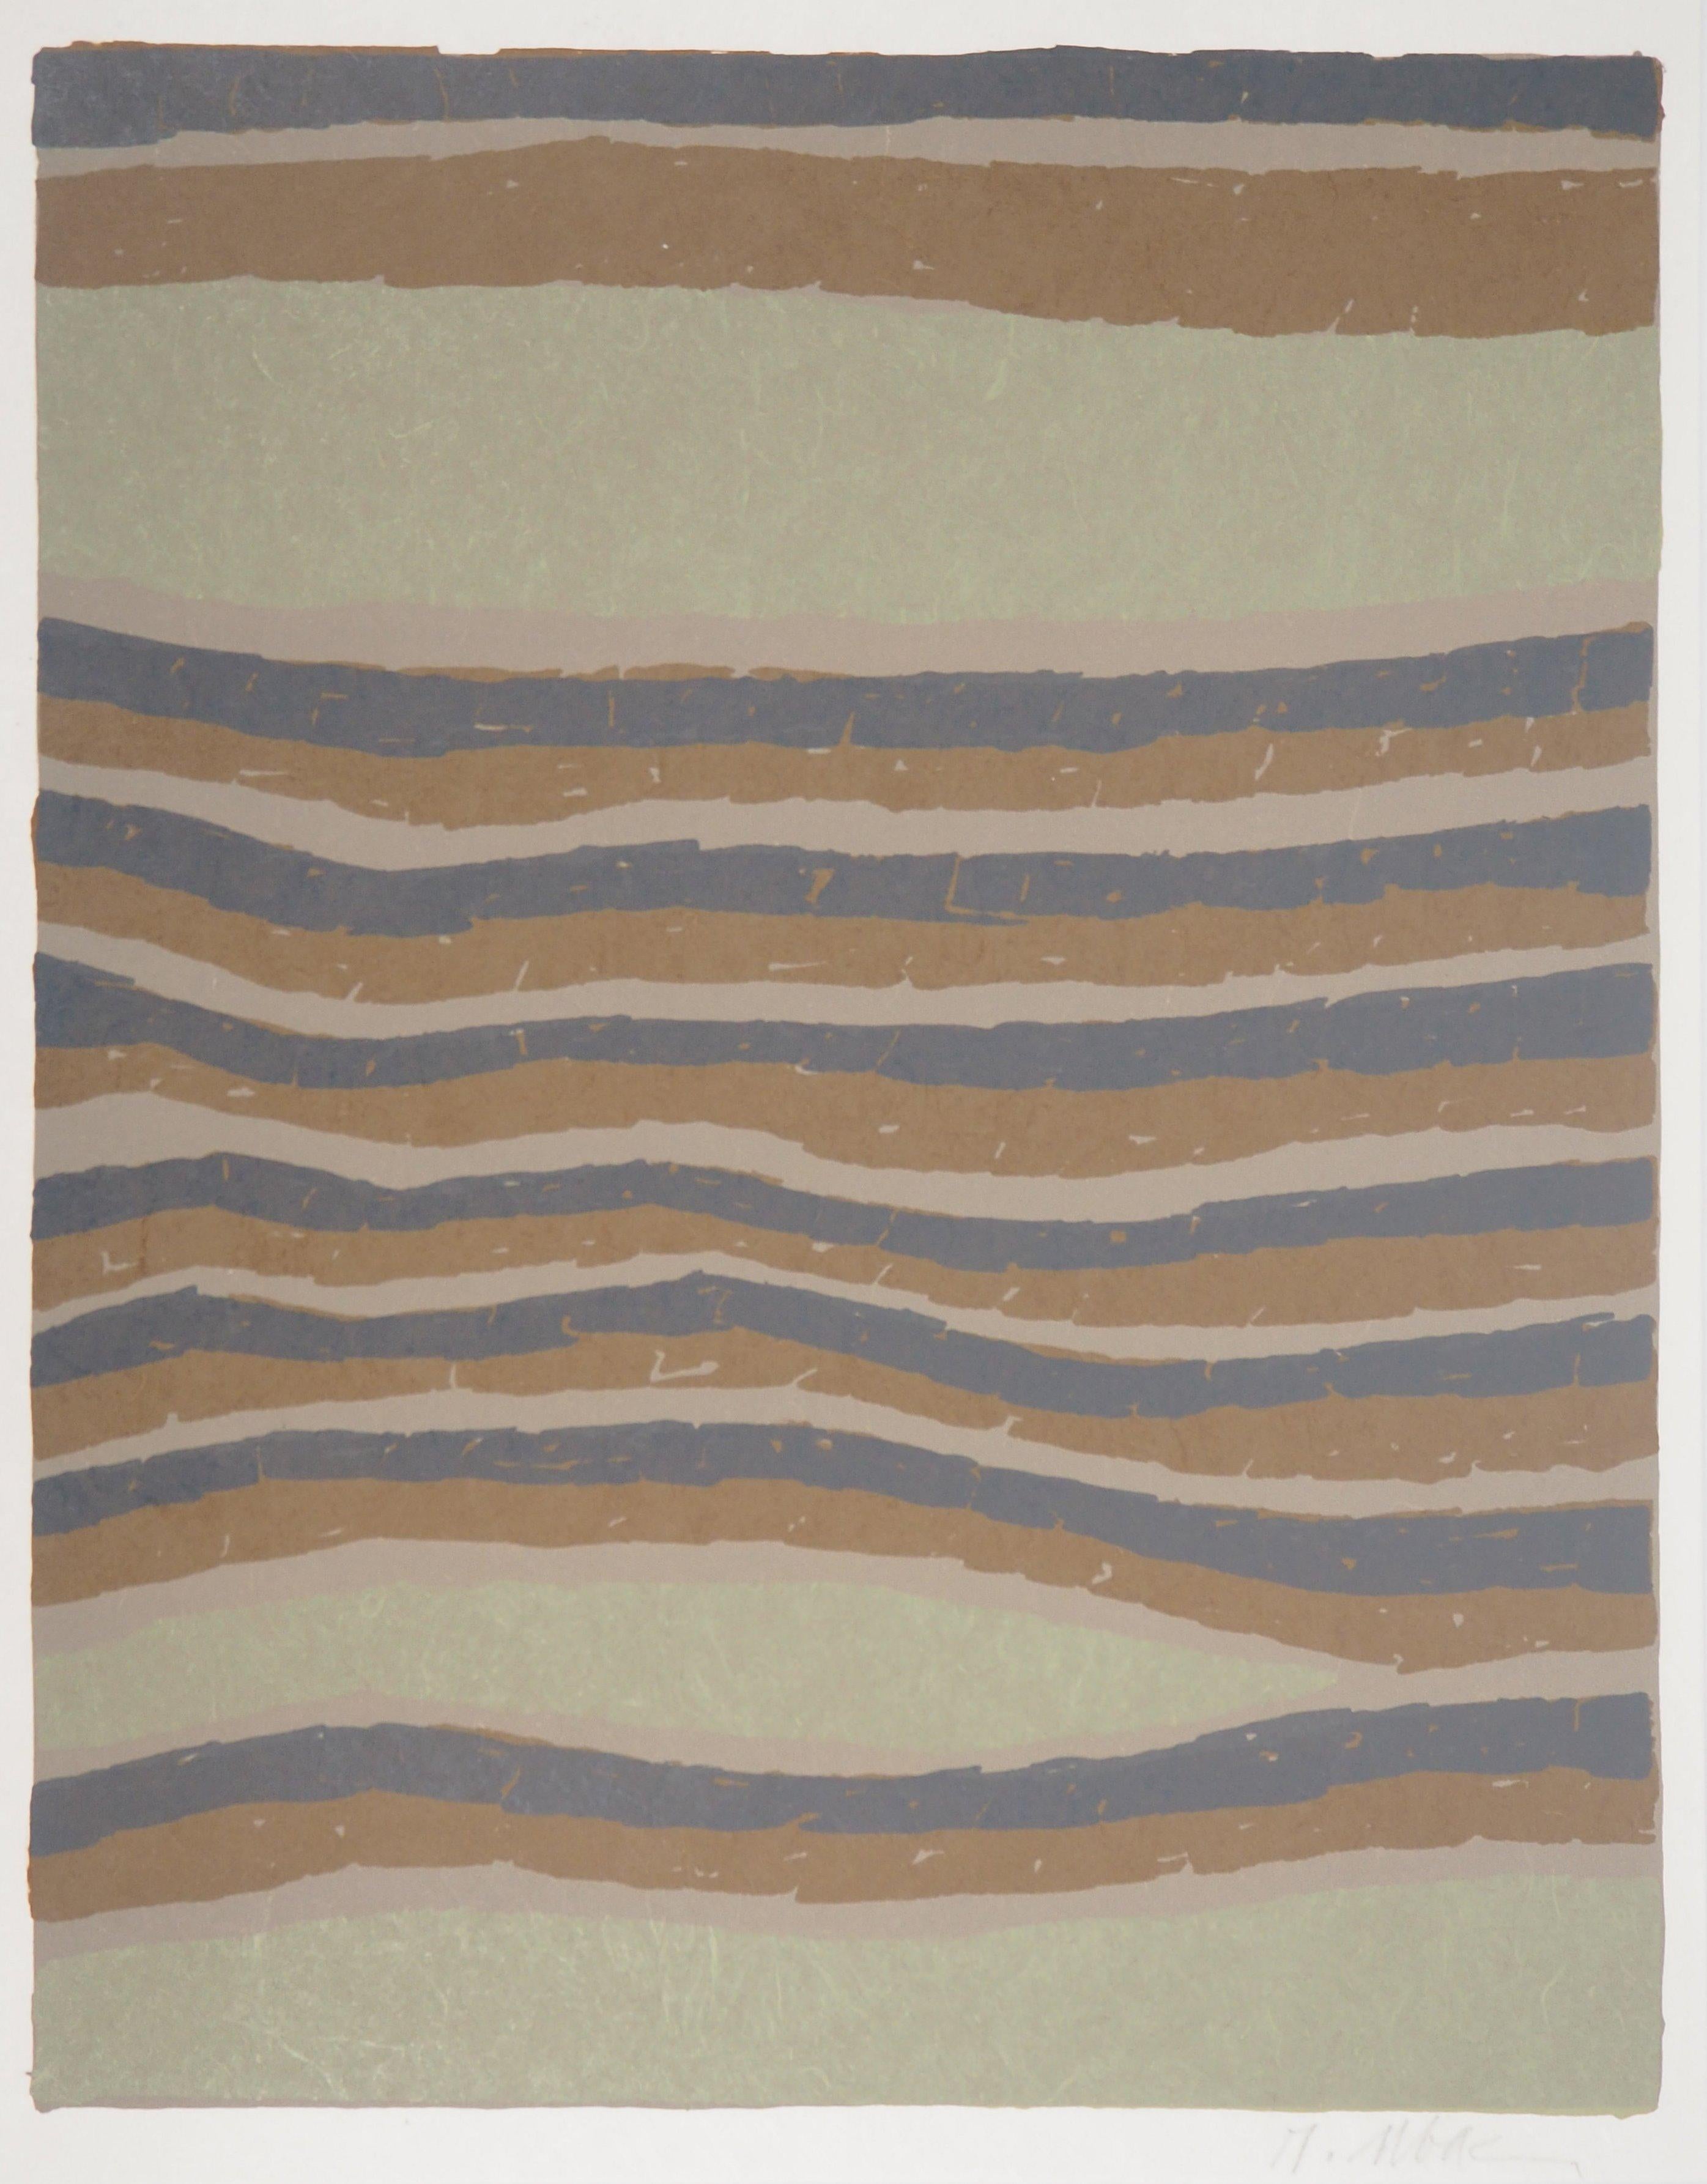 Landscape Print Raoul Ubac - Dessous de sable surréaliste - Lithographie originale signée à la main